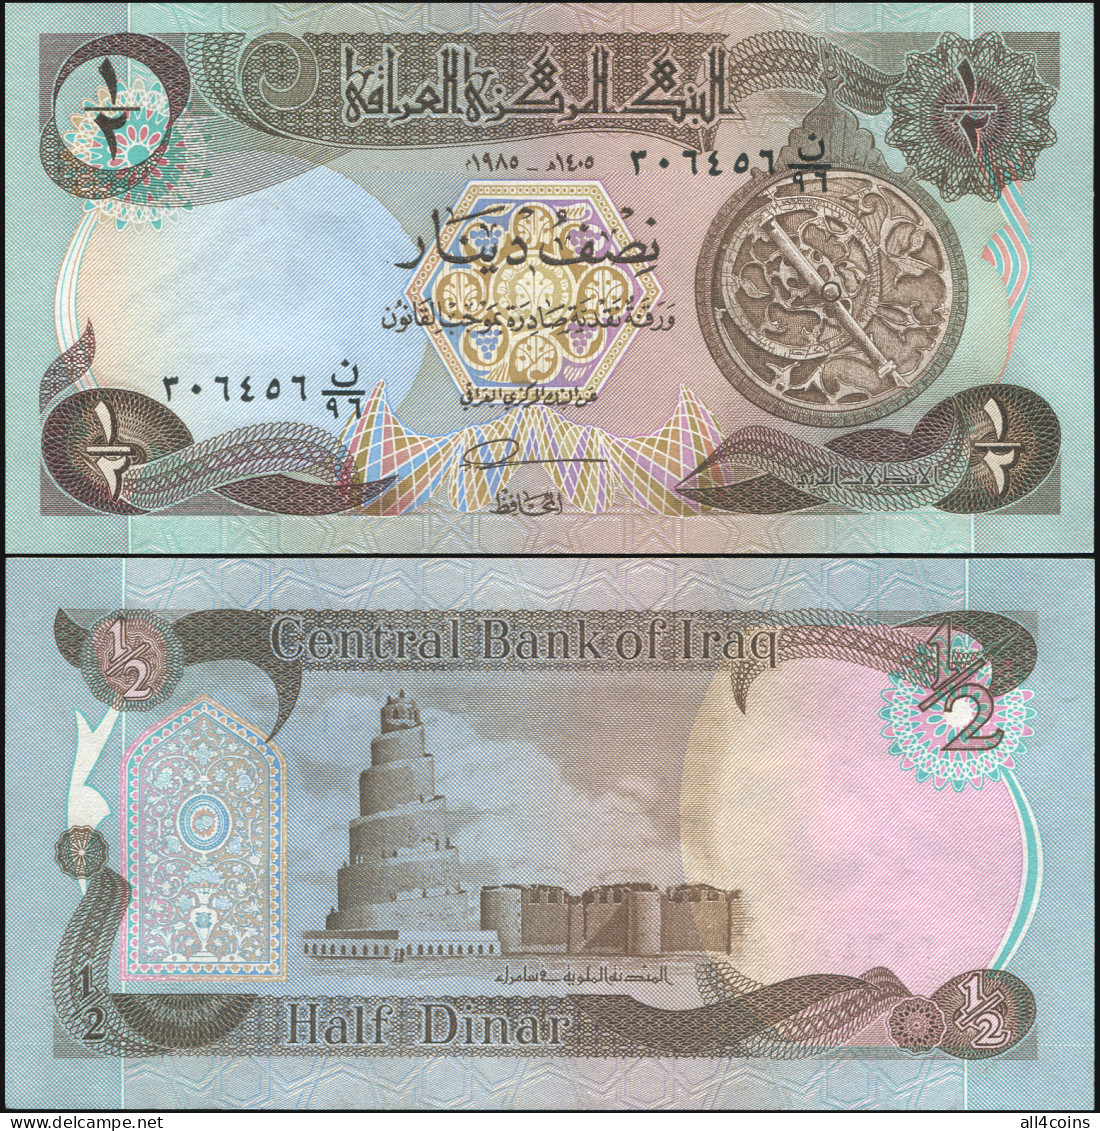 Iraq 1/2 Dinar. ١٩٨٥ (1985) Unc. Banknote Cat# P.68b - Iraq